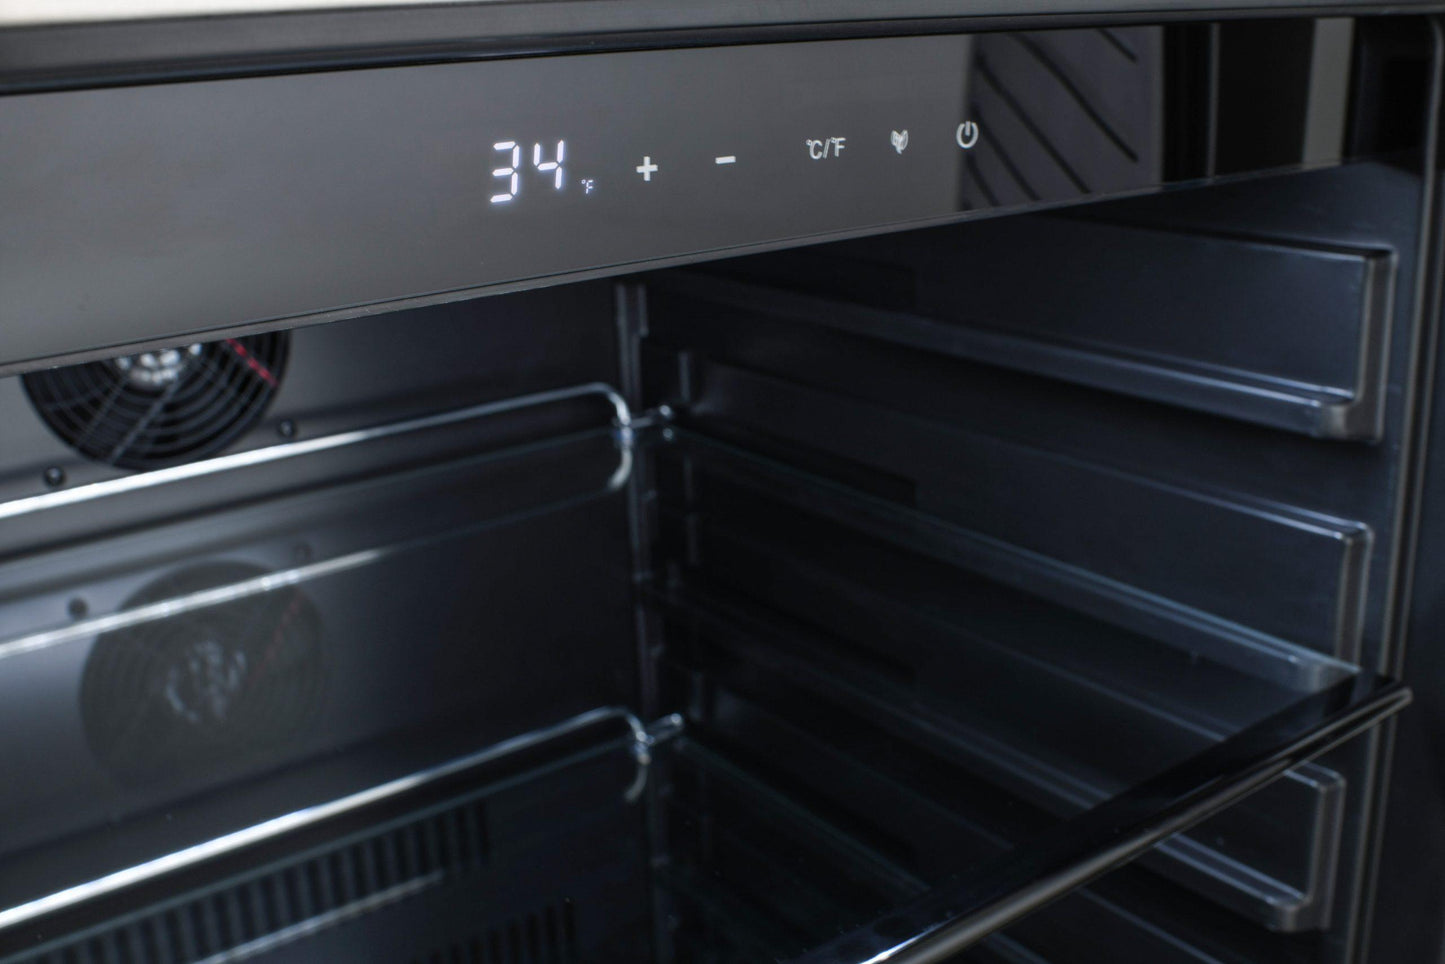 Blaze Grills BLZSSRF55 24" Outdoor Refrigerator